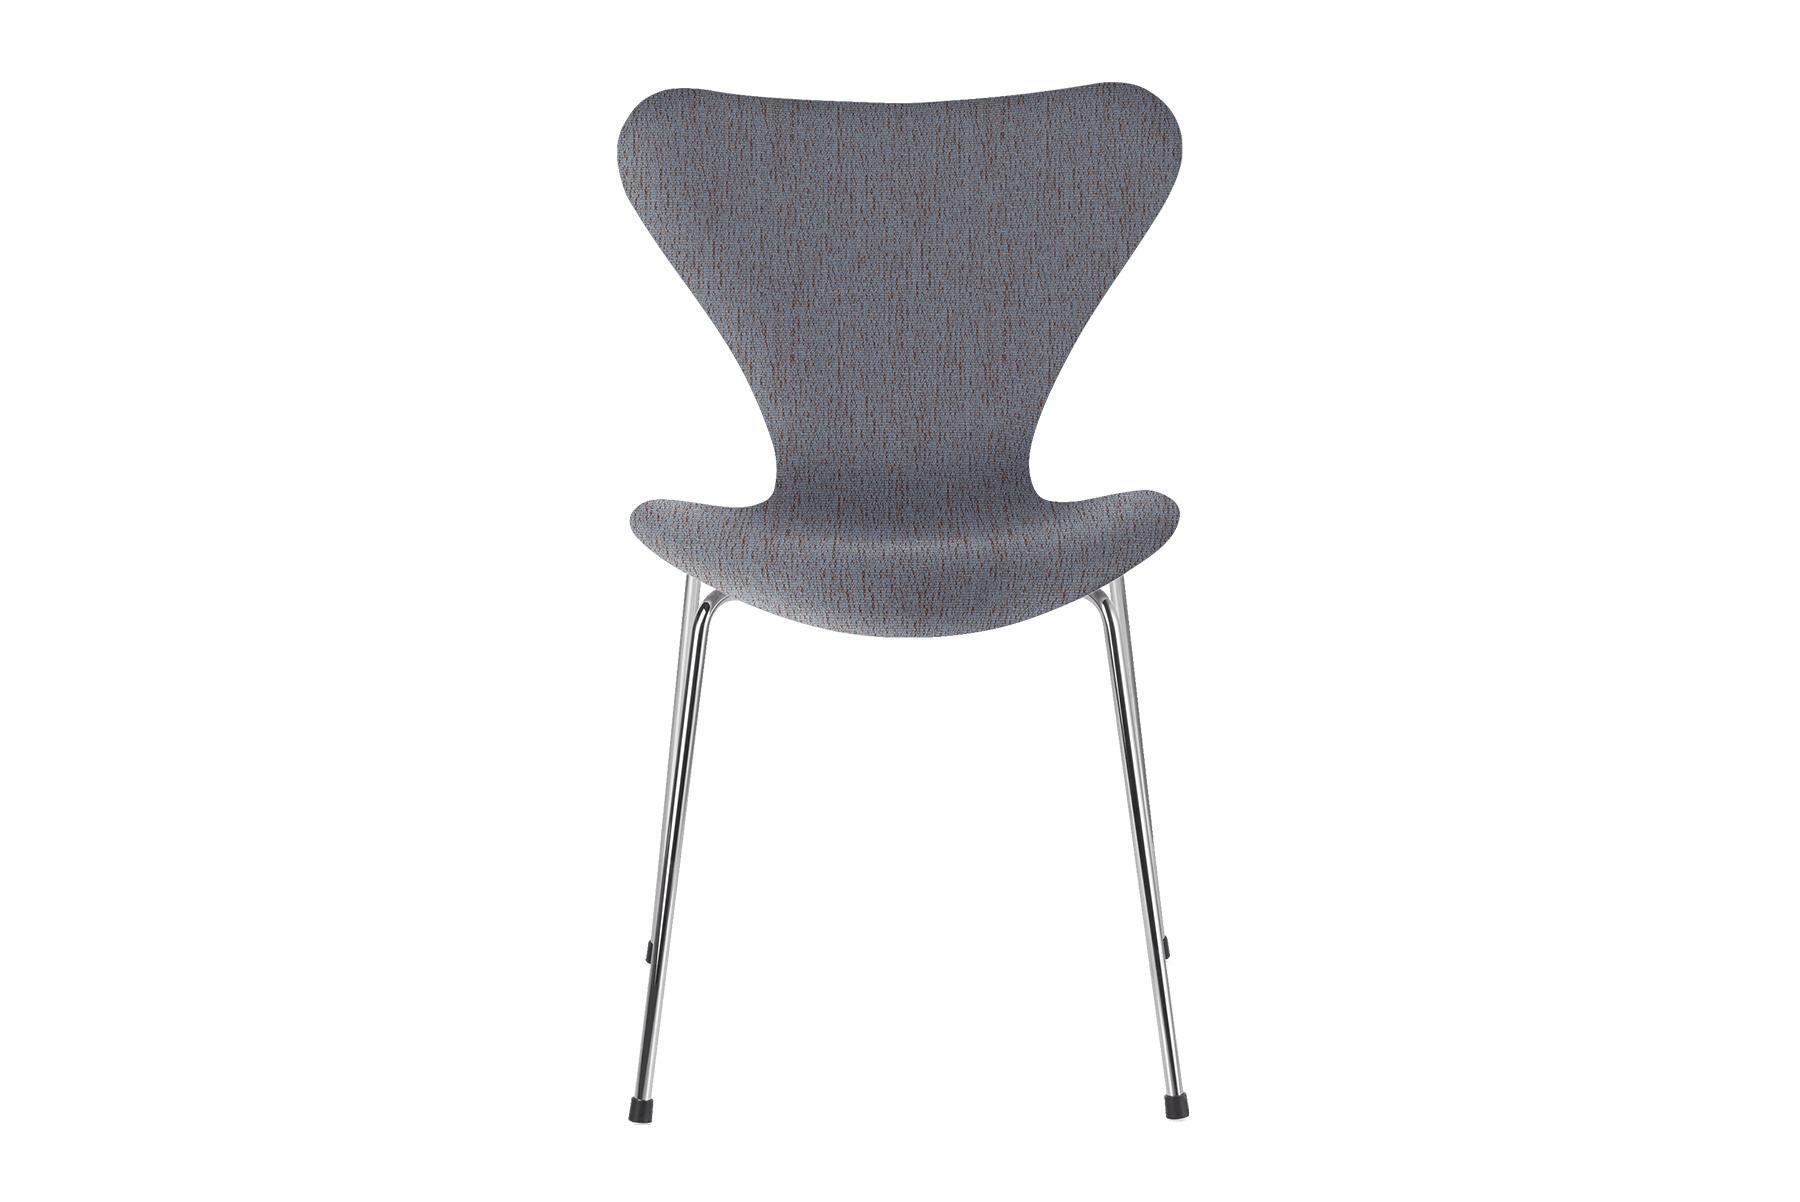 Der vierbeinige, stapelbare Stuhl stellt die Krönung der Laminiertechnik dar. Der Visionär Arne Jacobsen nutzte die Möglichkeiten des Laminierens bis zur Perfektion aus und schuf so die ikonische Form des Stuhls. Die Serie 7 ist der Stuhl in der